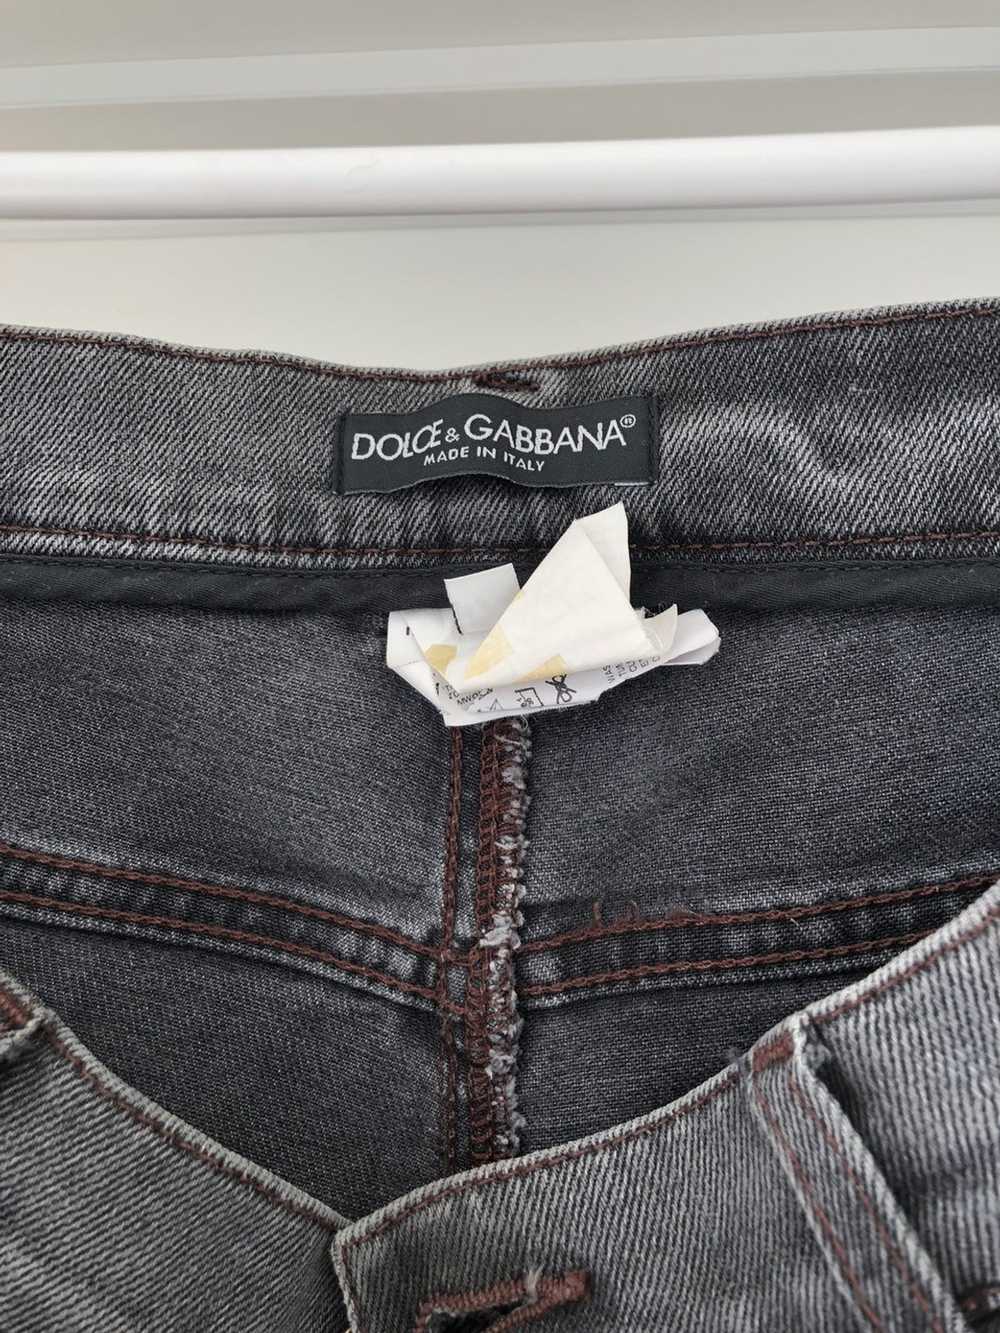 Dolce & Gabbana Dolce and Gabbana jeans - image 5